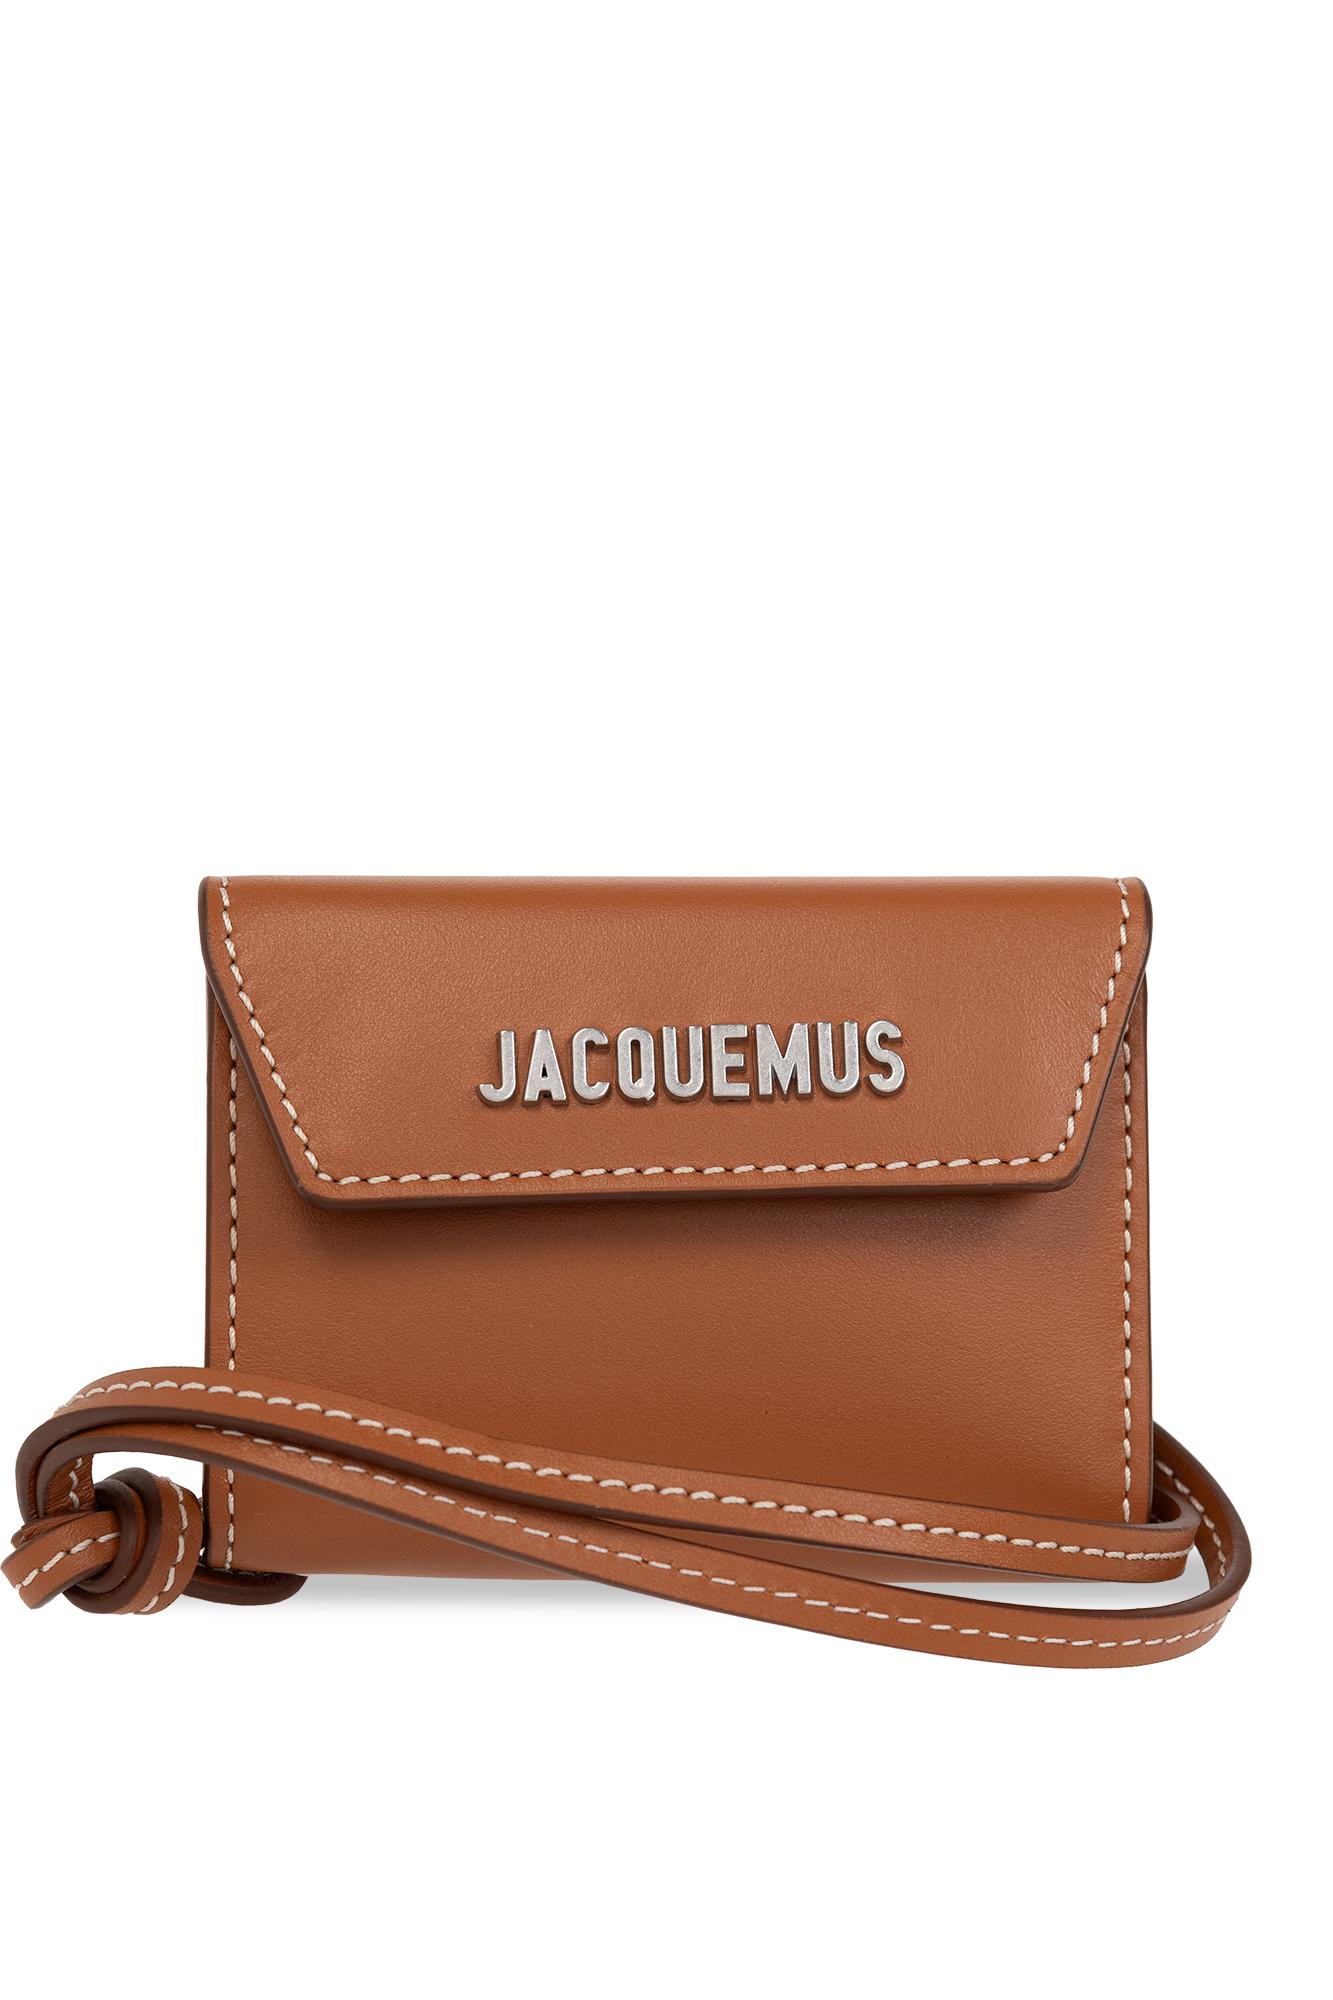 Jacquemus 'le porte' mini wallet